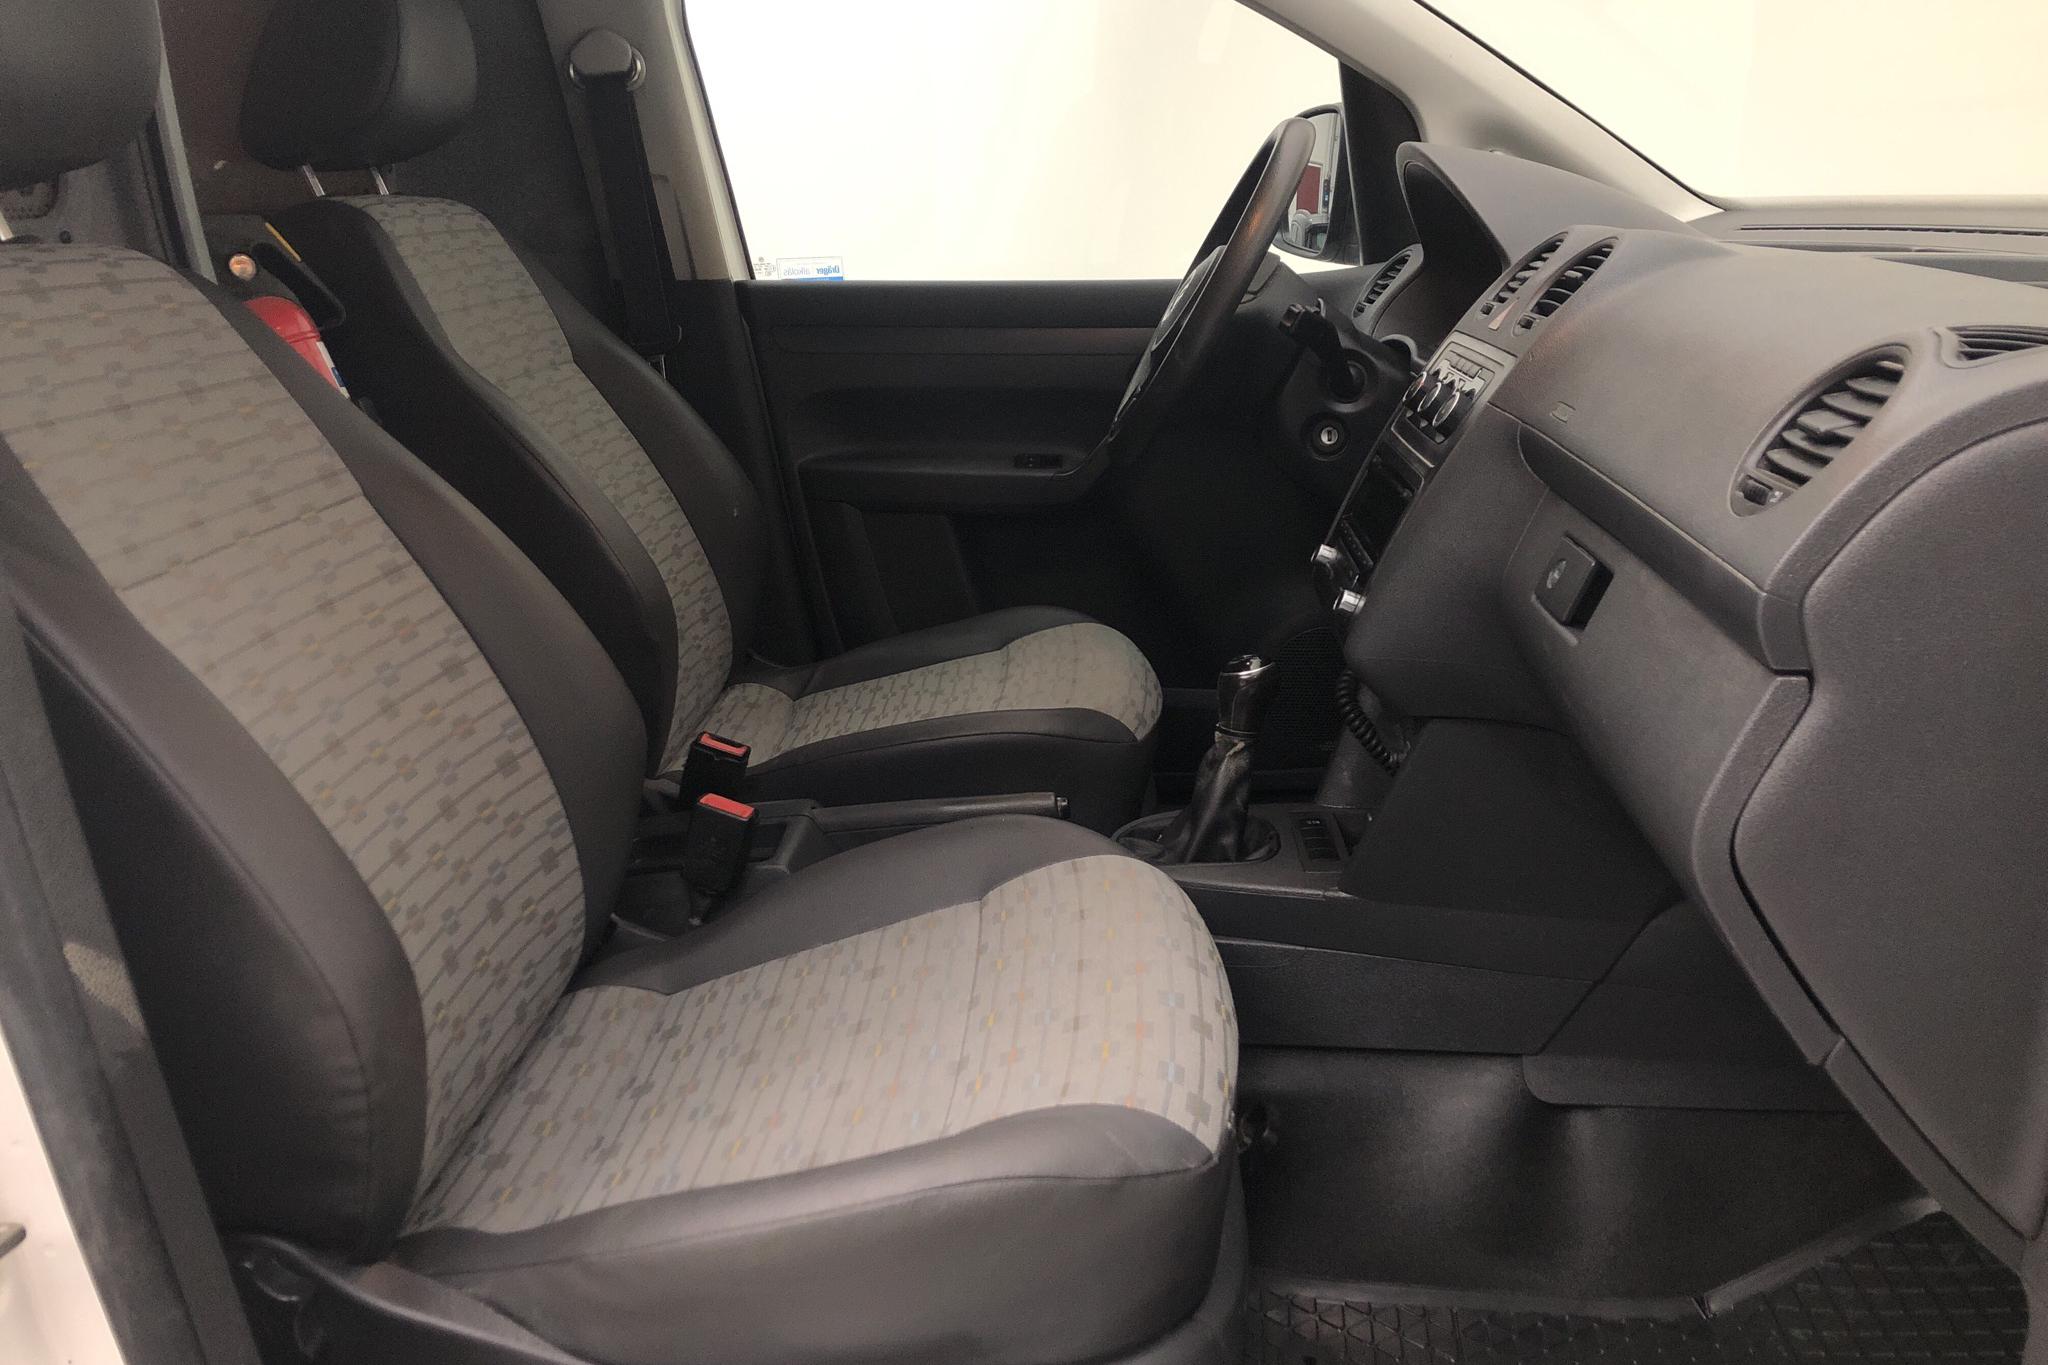 VW Caddy 1.6 TDI Skåp (102hk) - 3 914 mil - Manuell - vit - 2014